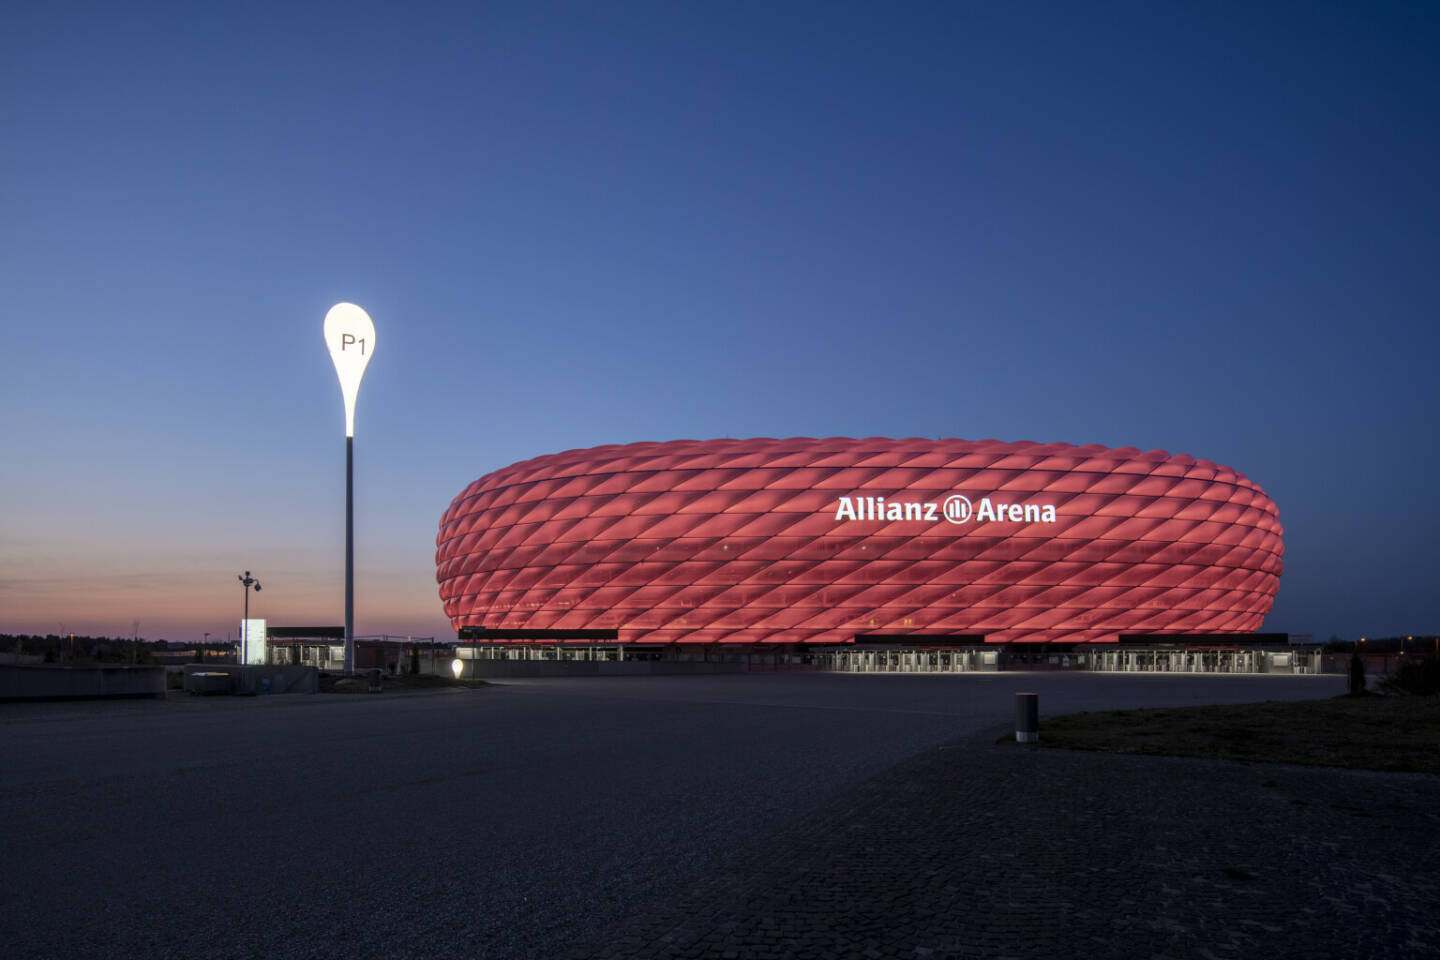 Esplanade der Allianz Arena erstrahlt in neuem Licht: Zumtobel Group realisiert Sonderlichtlösung mit überdimensionalen Ballonleuchten; Photography by Faruk Pinjo, 2021.